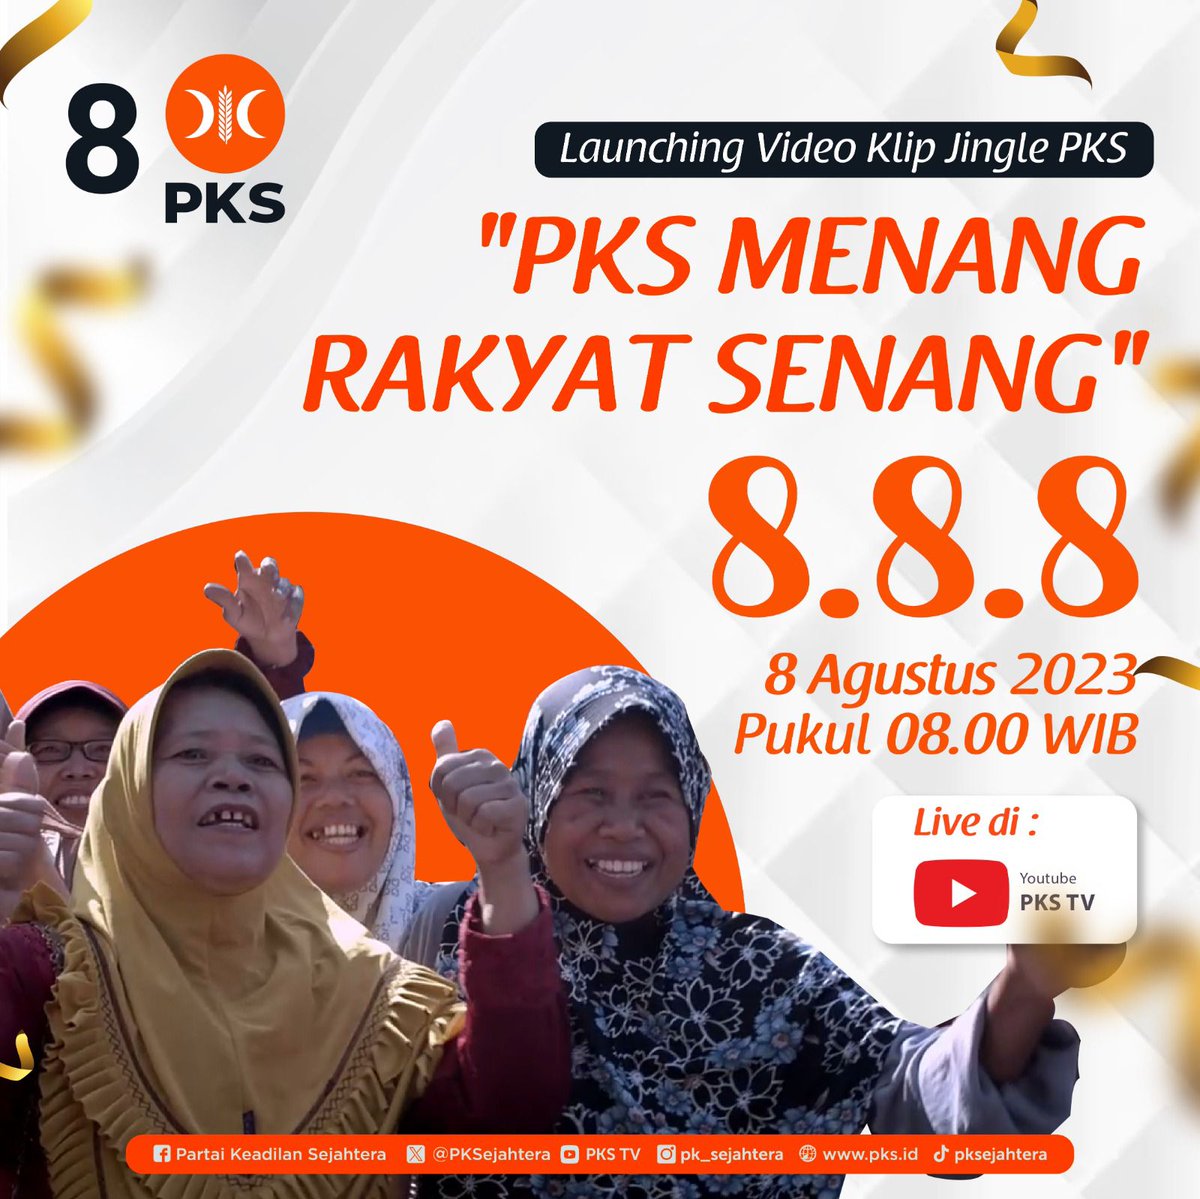 PKS MENANG RAKYAT SENANG

#PKSpembelarakyat
#PKSnomor8 
#PKSuntukindonesia